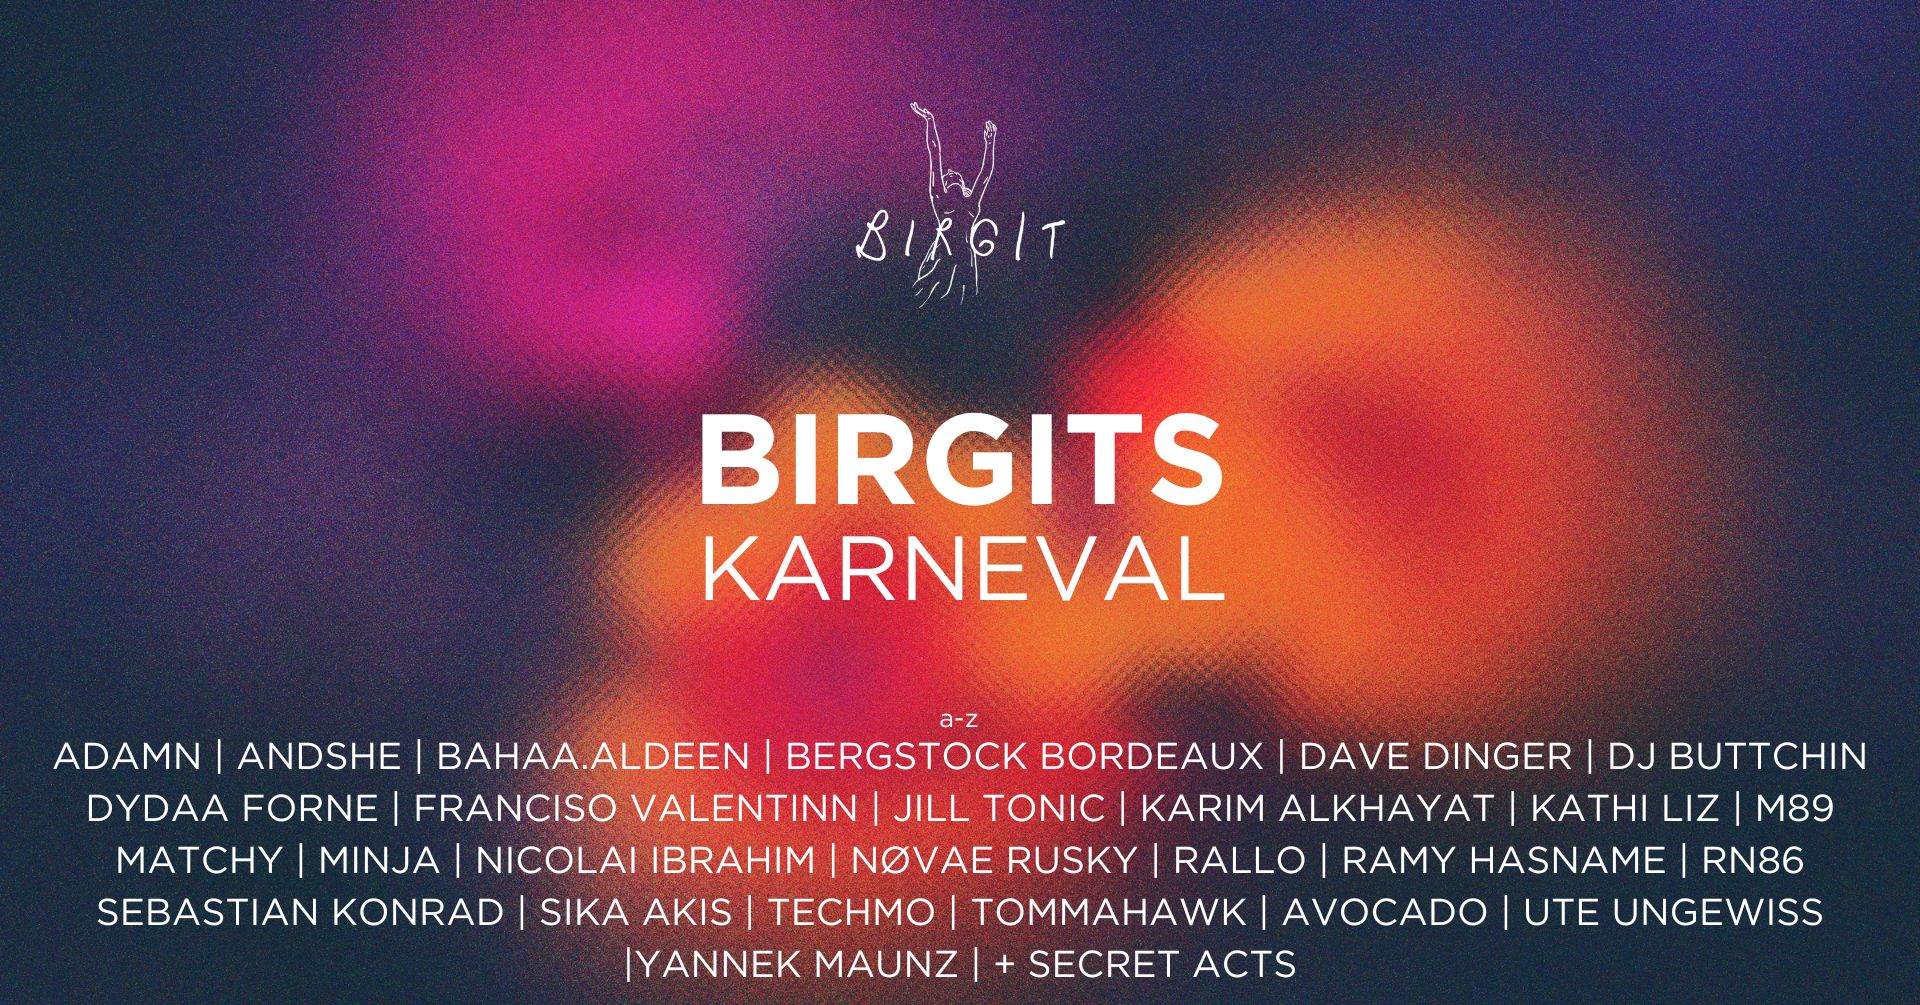 Birgits Karneval der Kulturen with Matchy, Tommahawk, Sebastian Konrad, Avocado, uvm - フライヤー表